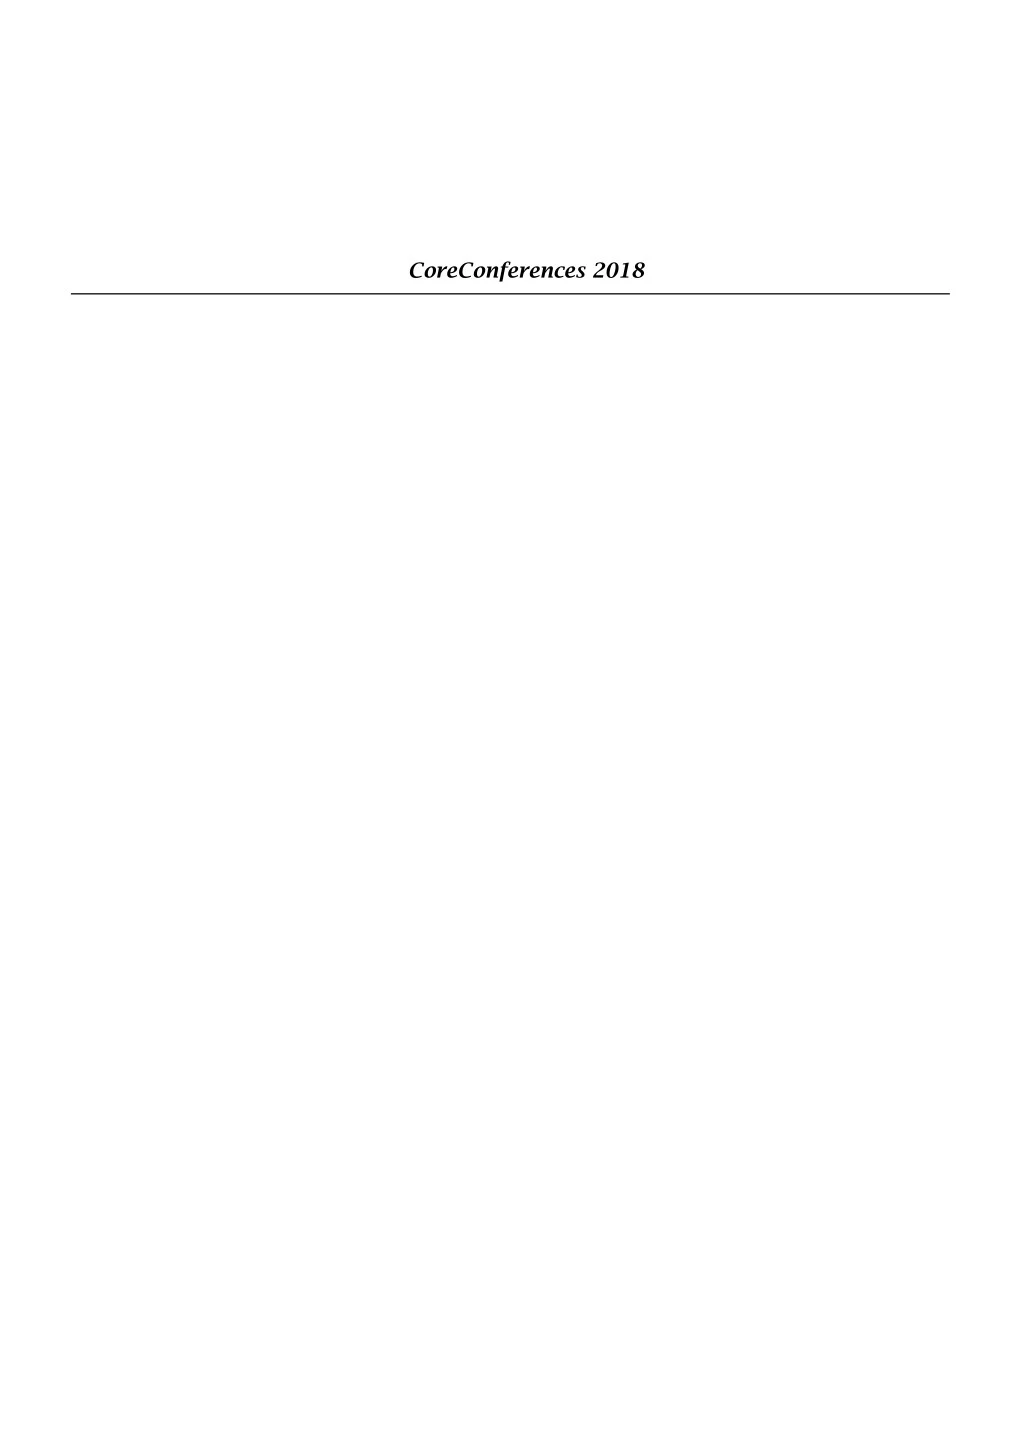 coreconferences 2018